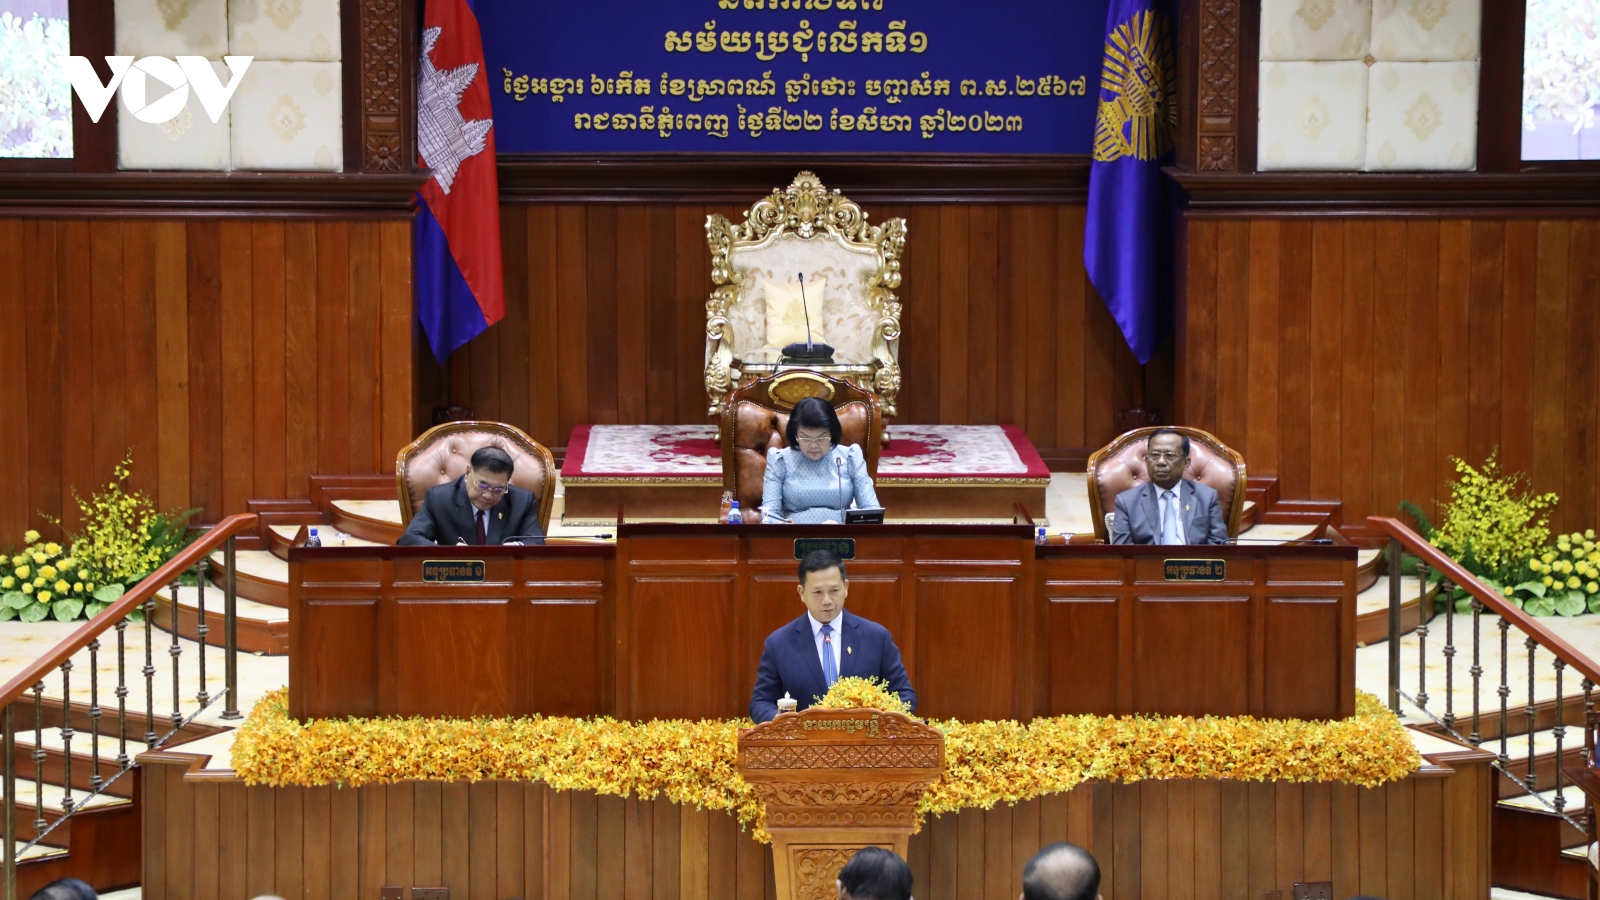 Tân Thủ tướng Hun Manet gợi mở mục tiêu của Chính phủ Campuchia trong tương lai